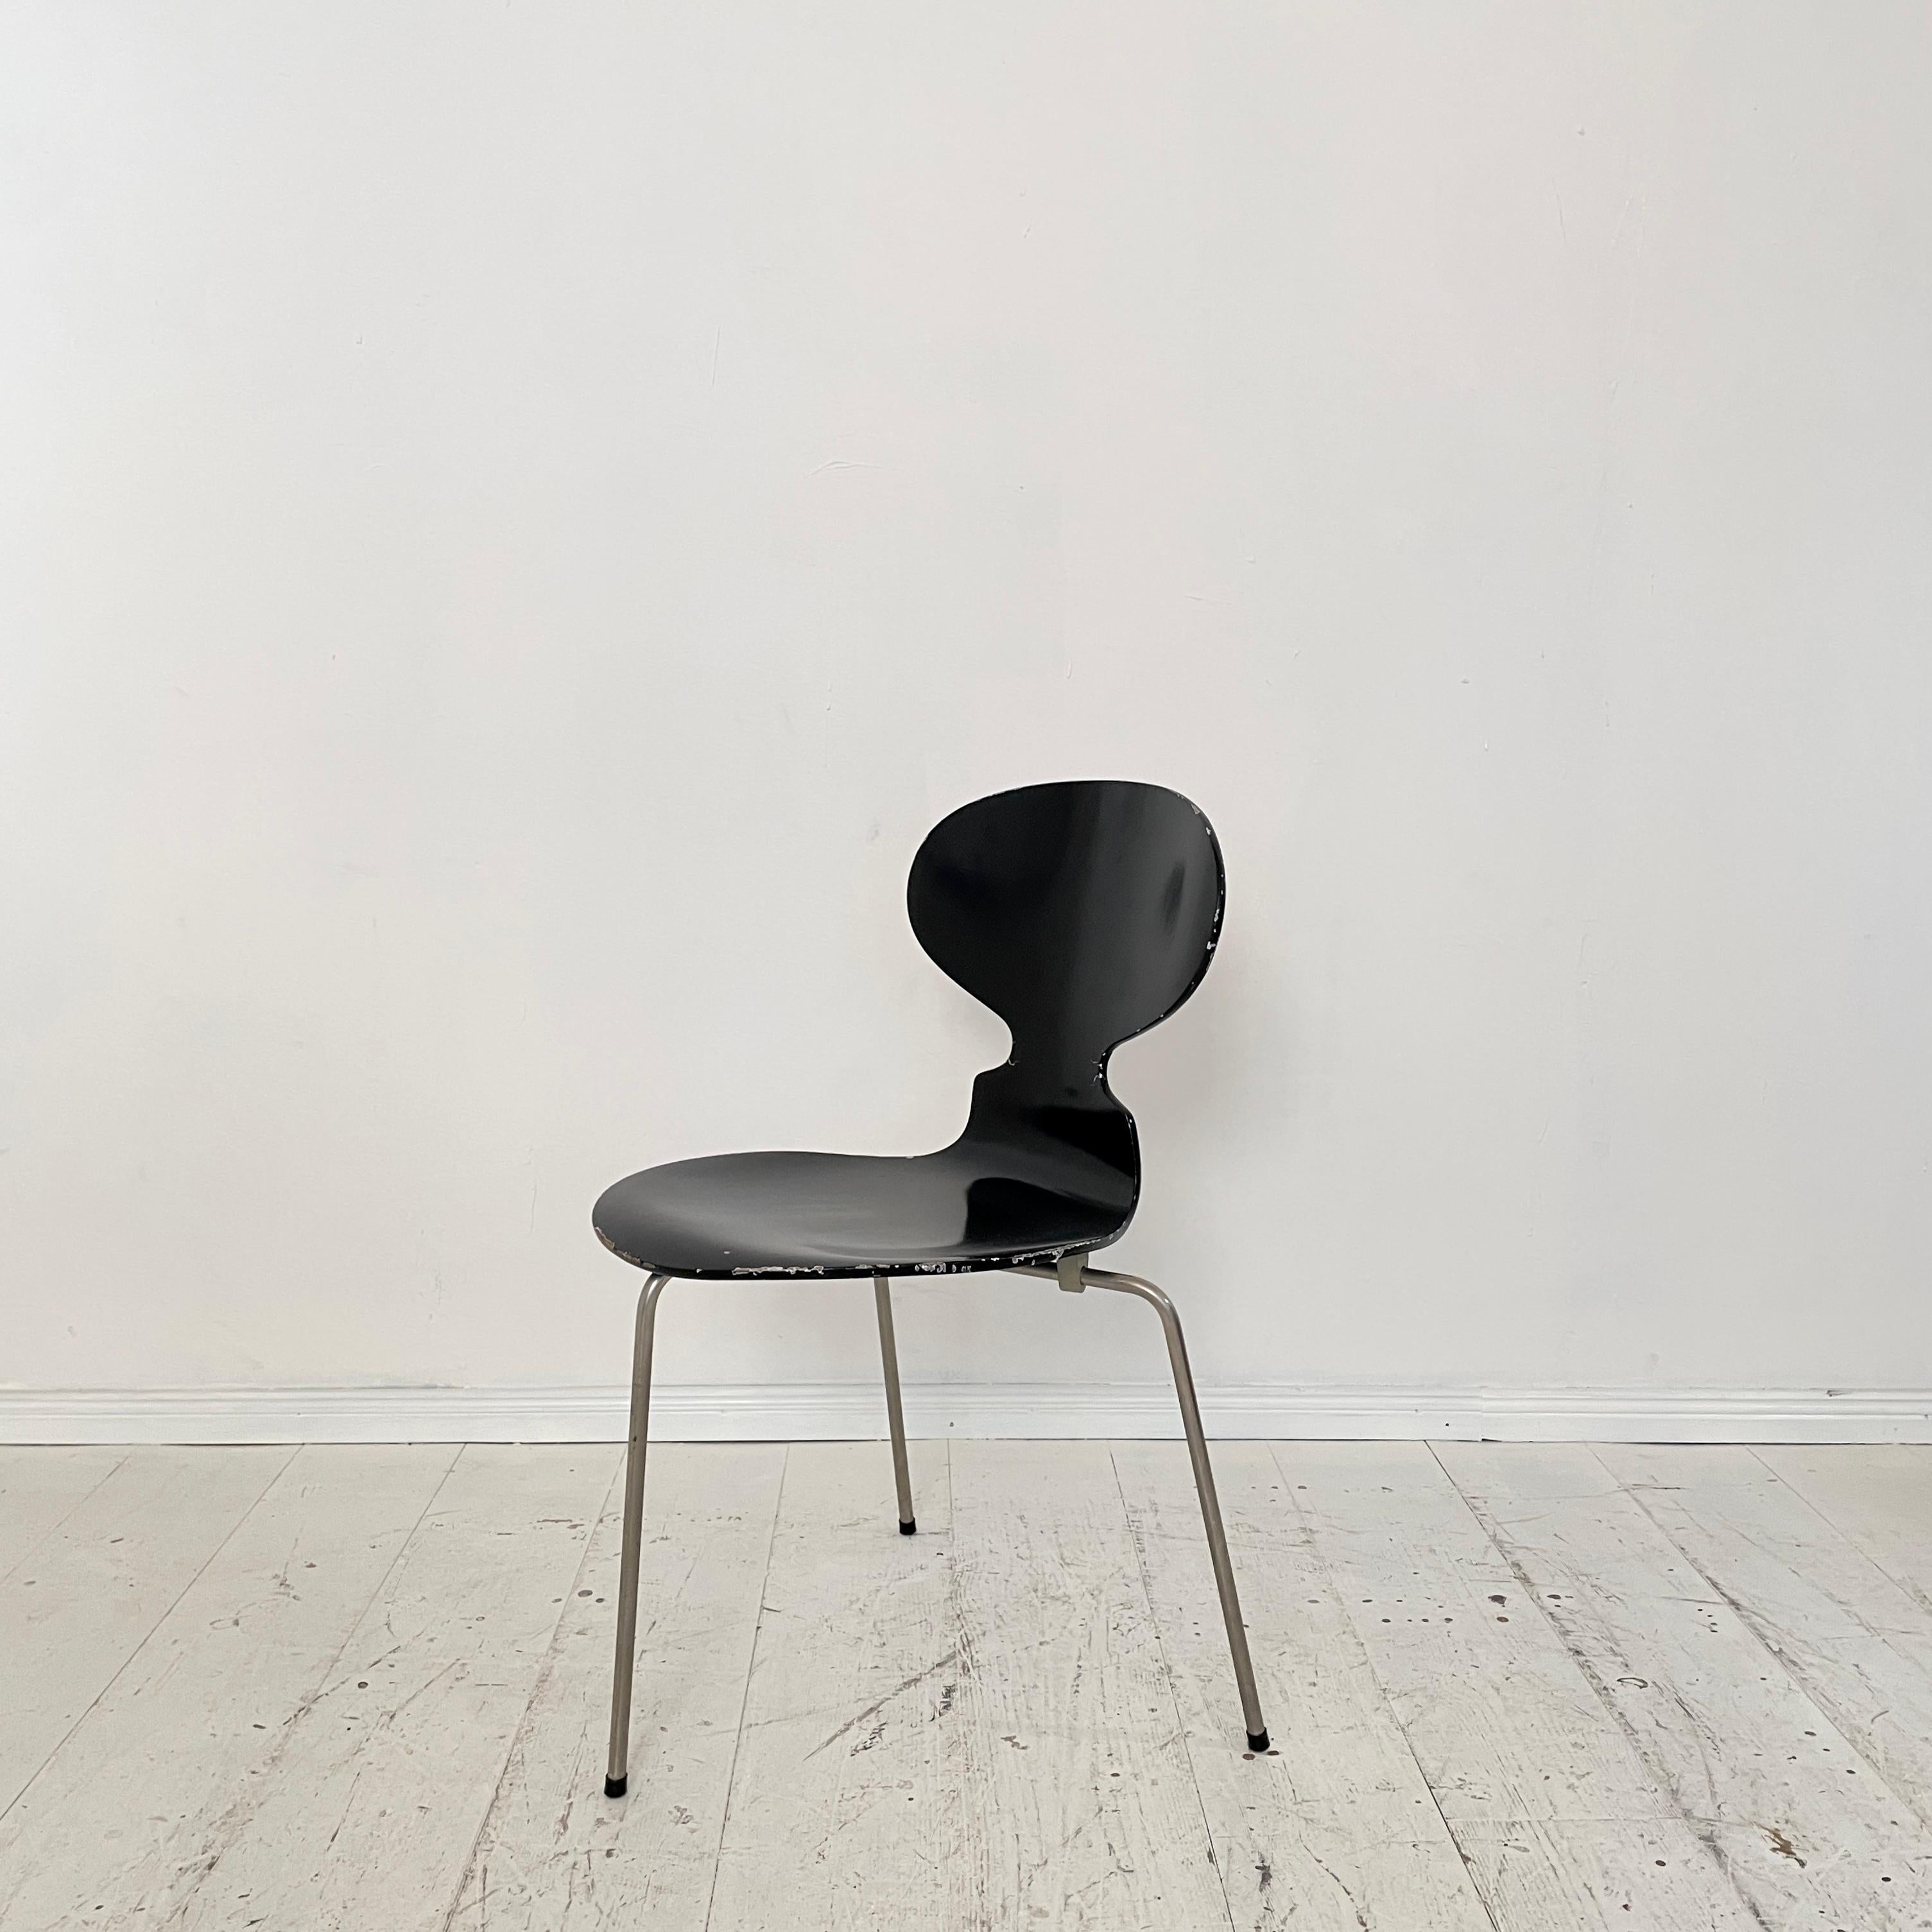 Danish Mid-Century Black Ant Chair by Arne Jacobsen for Fritz Hansen, around 1957